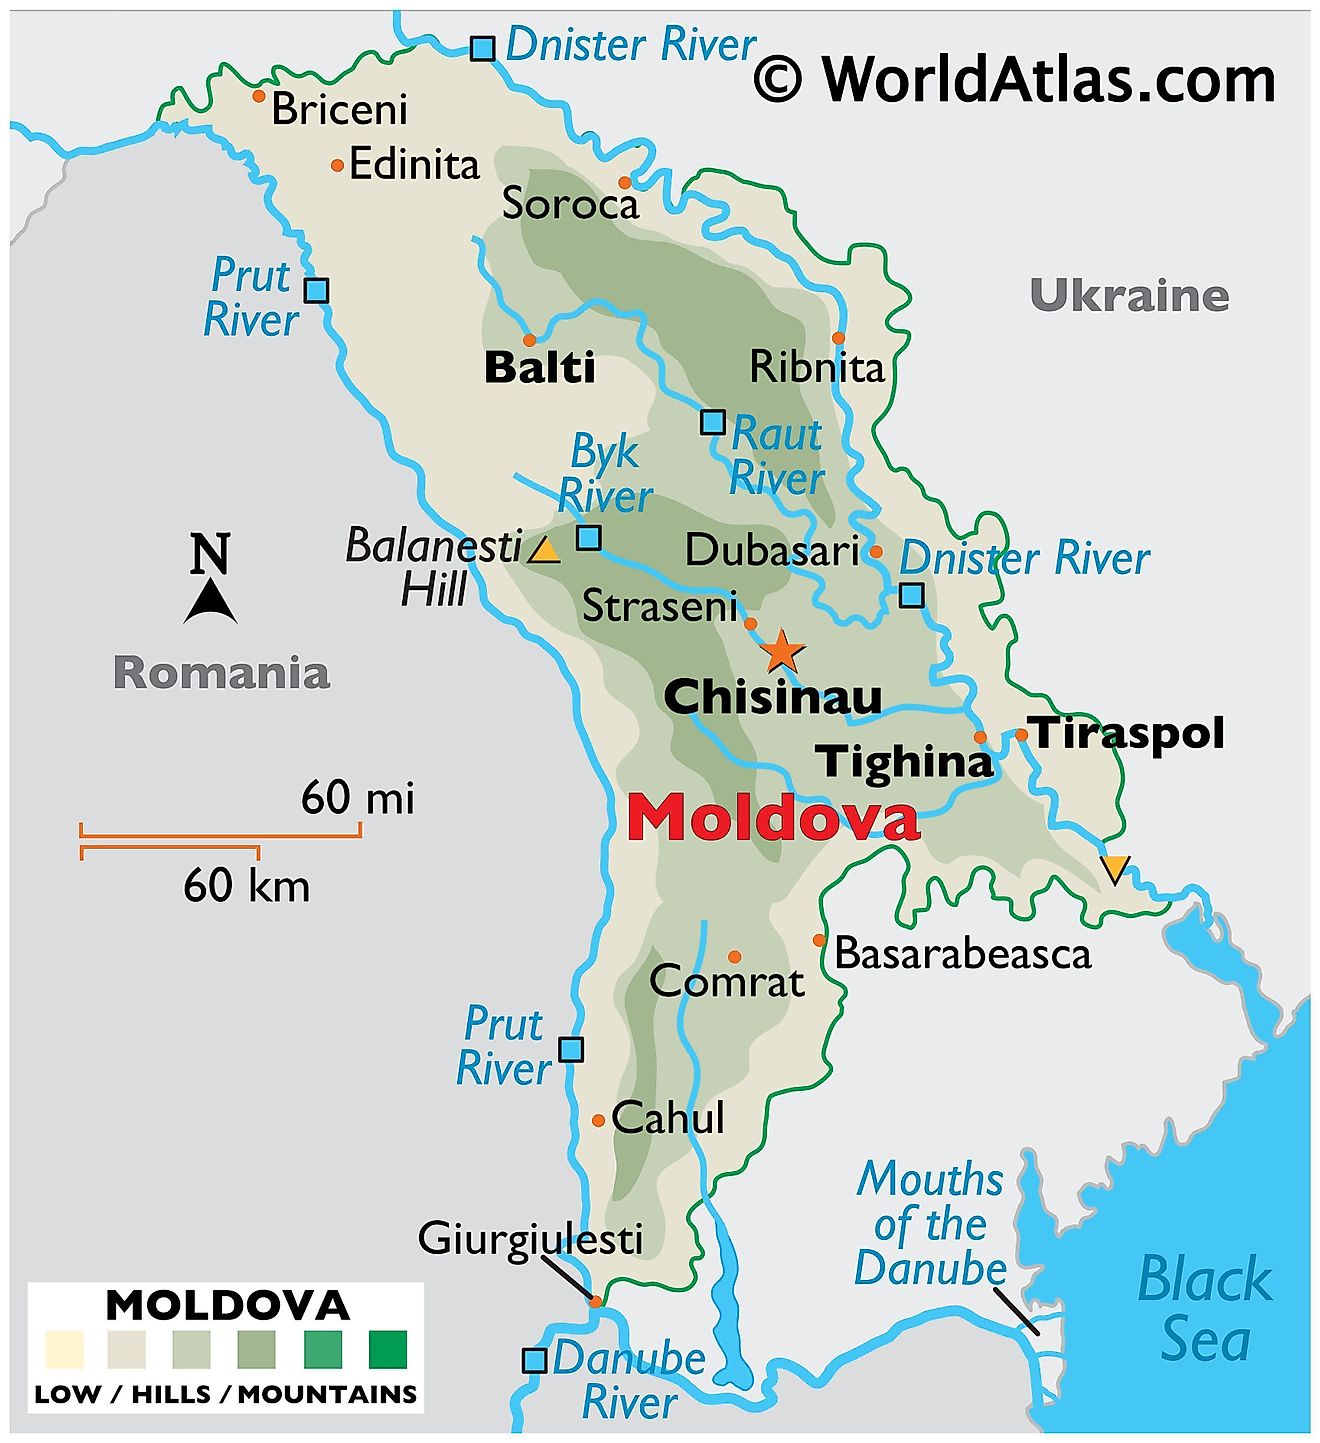 Mapa físico de Moldavia que muestra el terreno, los puntos más altos y más bajos, los principales ríos que drenan el país, las ciudades importantes, las fronteras internacionales, etc.